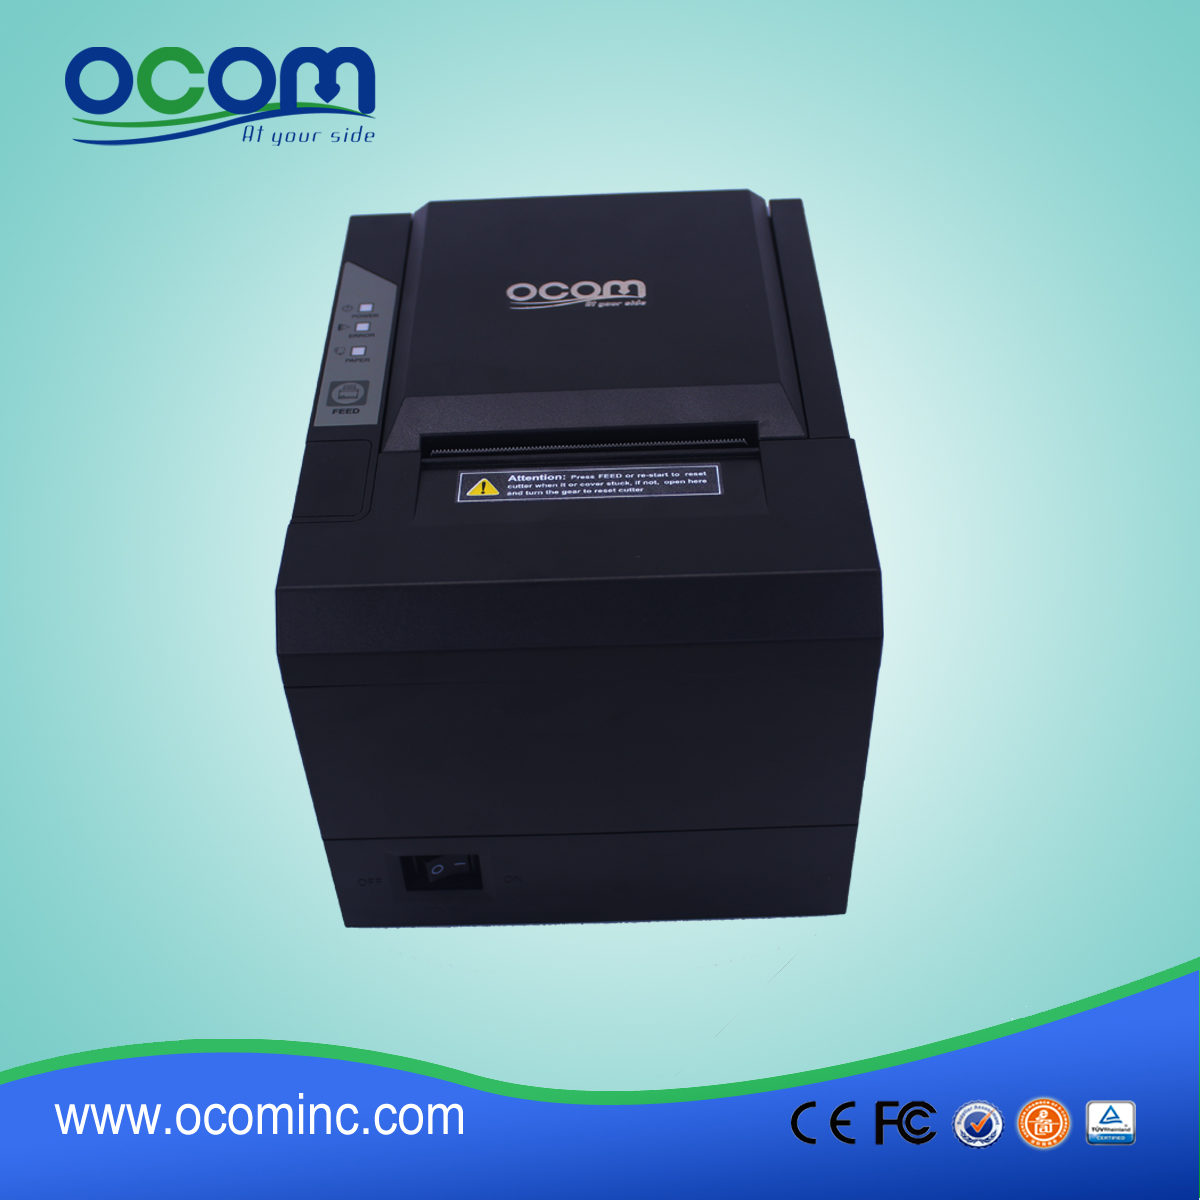 أوكب-80G عالية سرعة الطباعة 80 ملليمتر طابعة حرارية مع أوسب + rs232 + لان واجهة